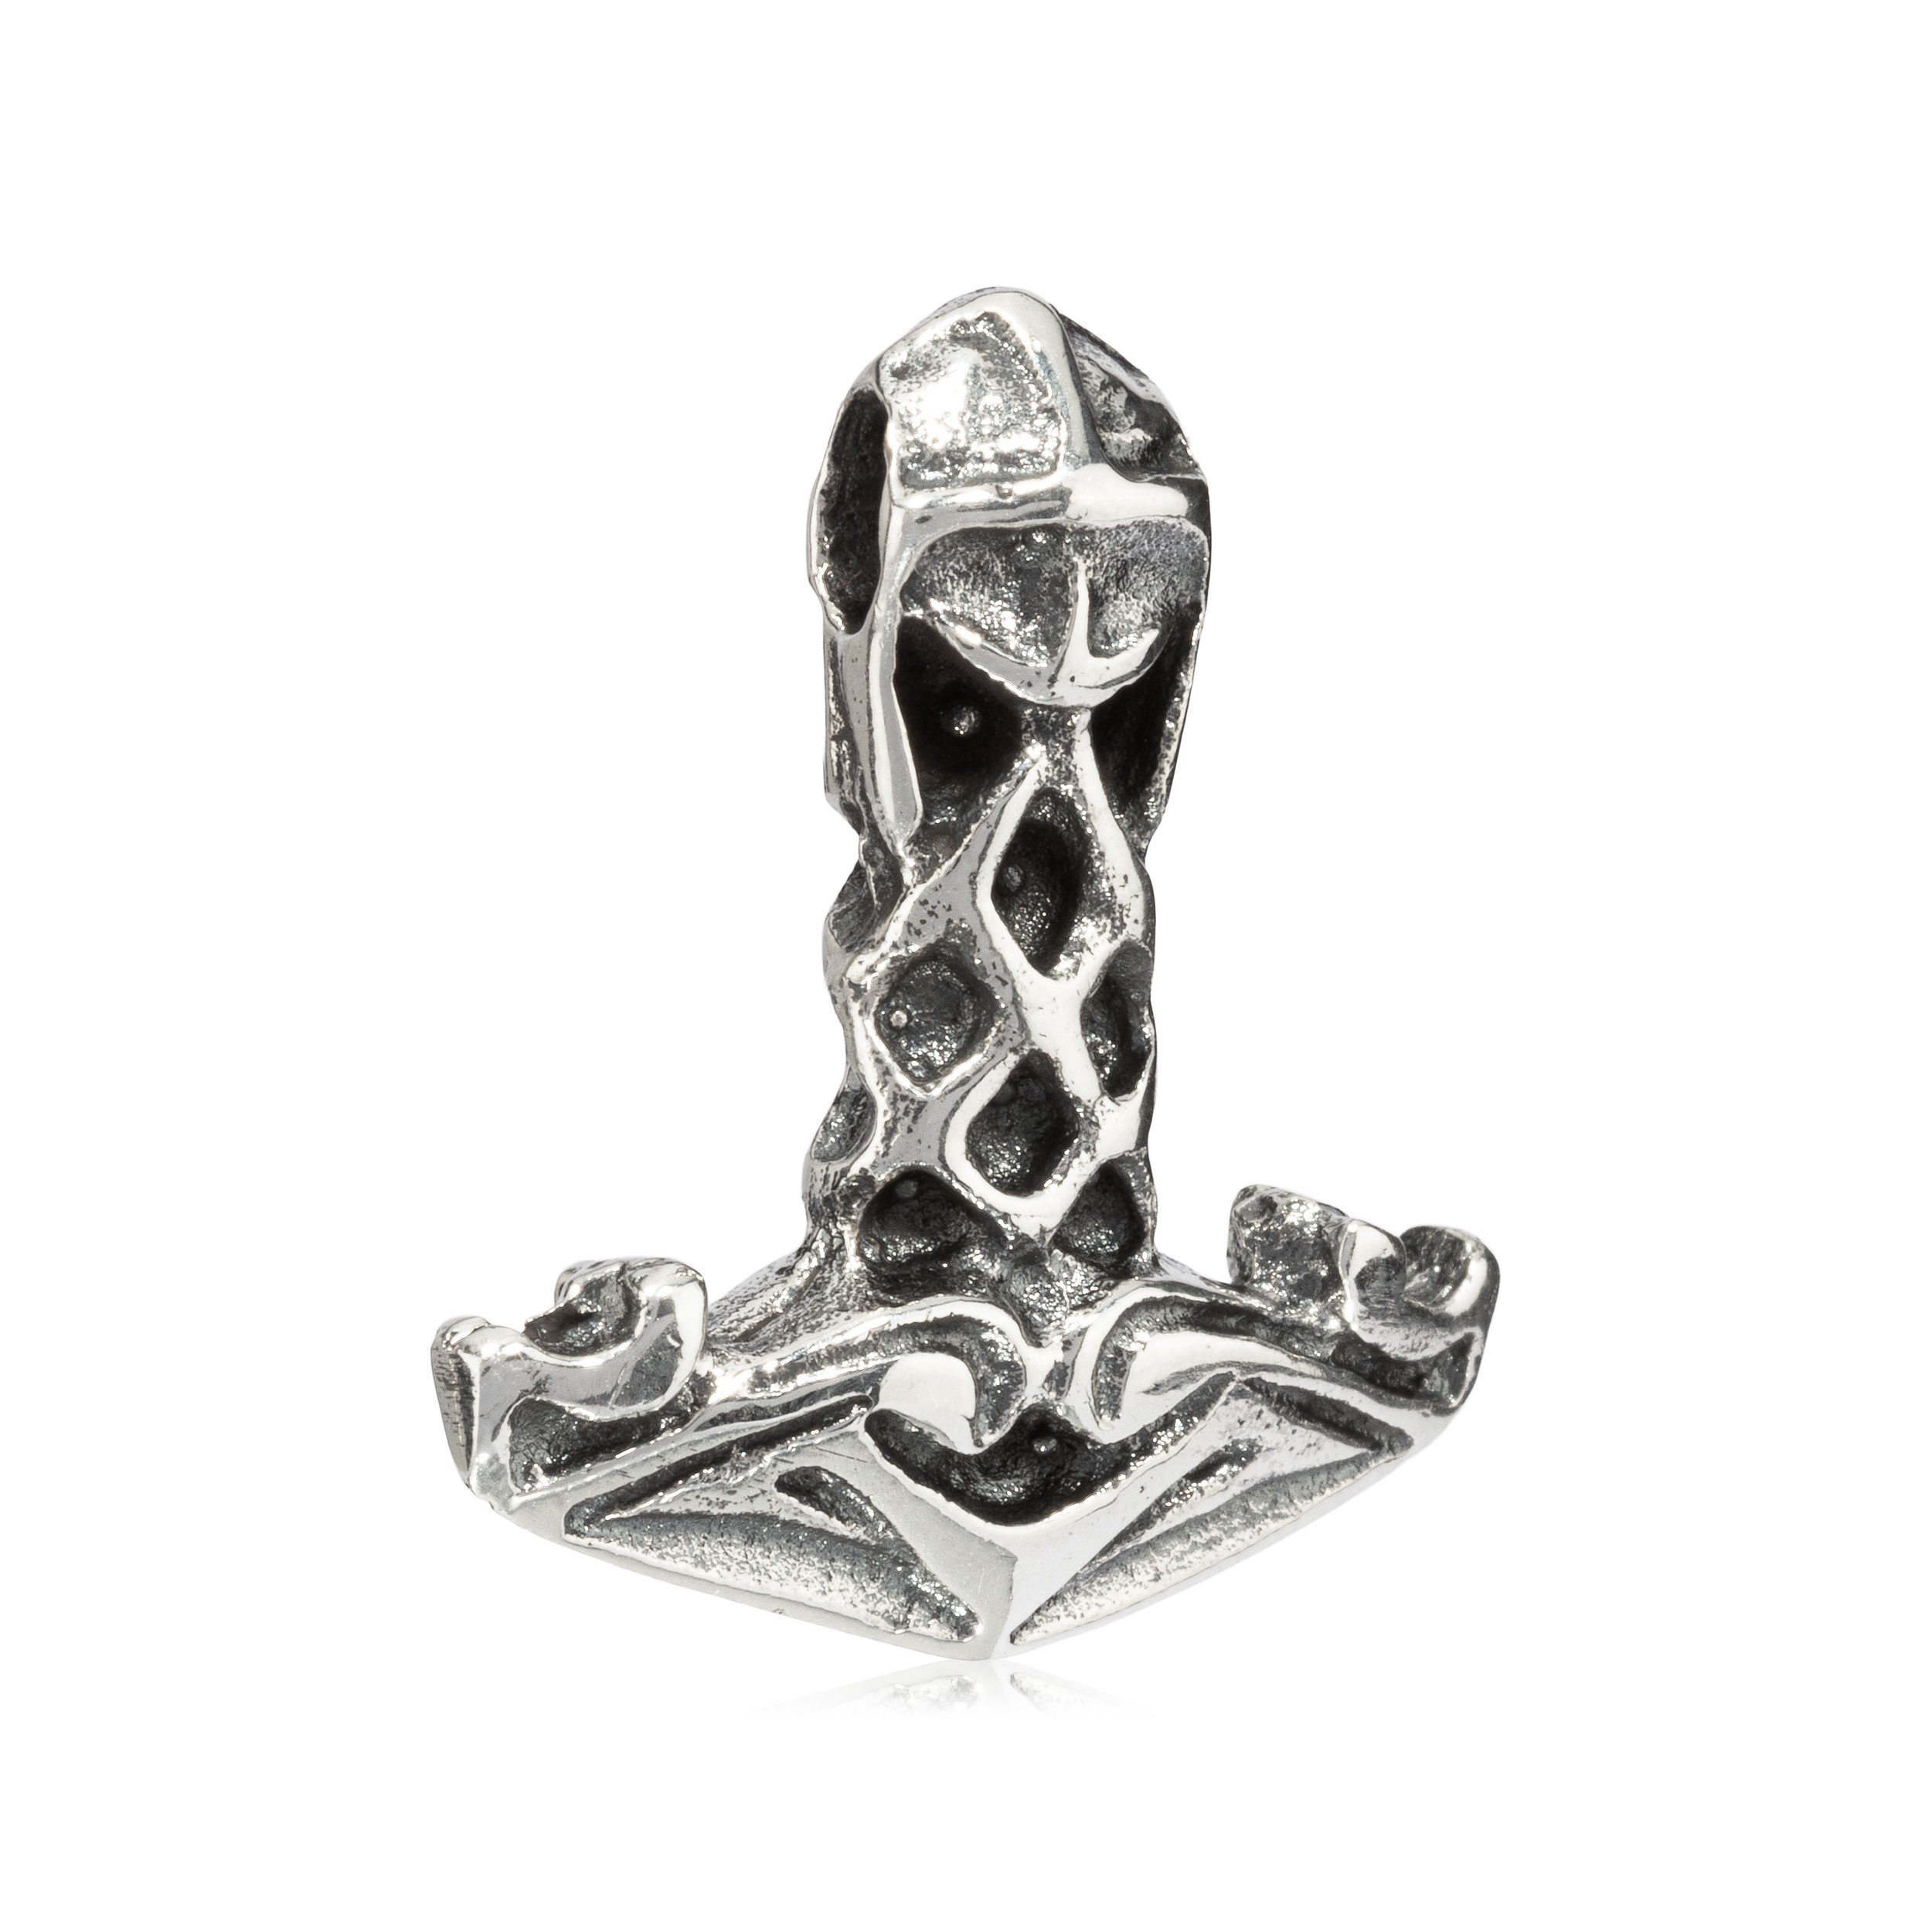 NKlaus Kettenanhänger 2,2cm Thors Hammer Kettenanhänger Silber 925 Amul, 925 Sterling Silber Silberschmuck für Damen